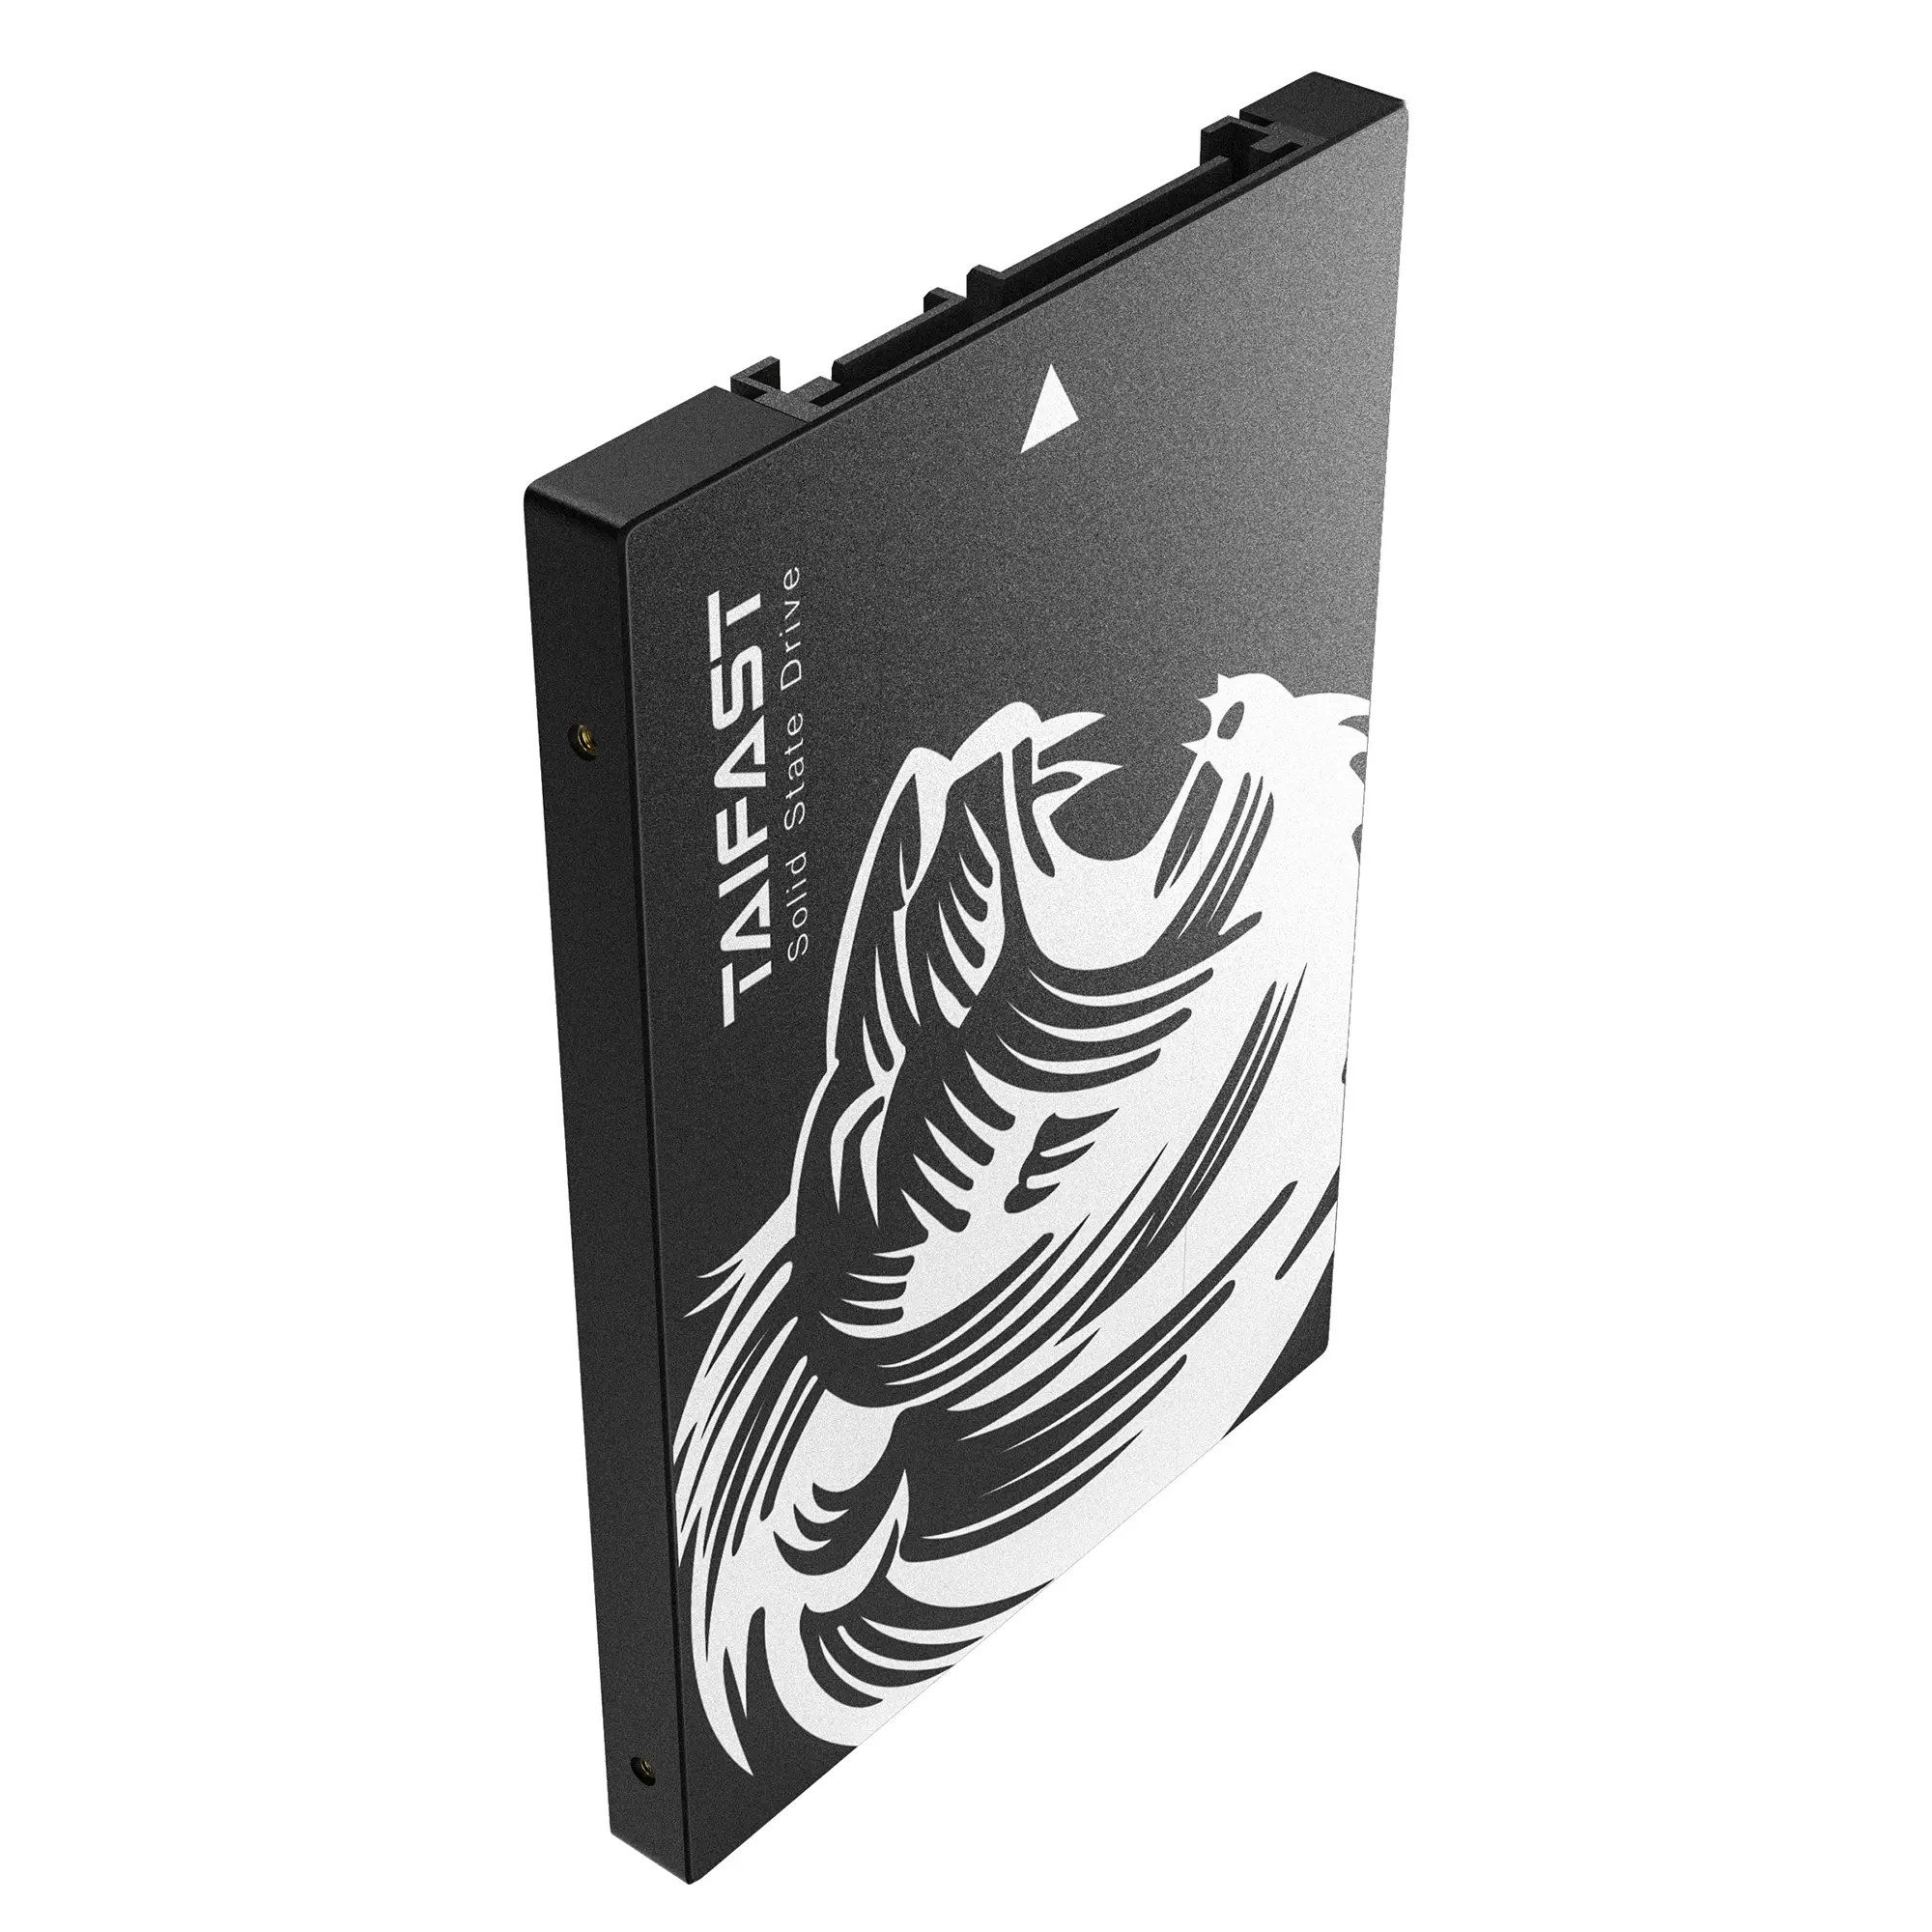 Taifast nero SATA III SSD disco rigido da 2.5 pollici da 120GB a 8TB per Desktop PC portatile materiale di plastica